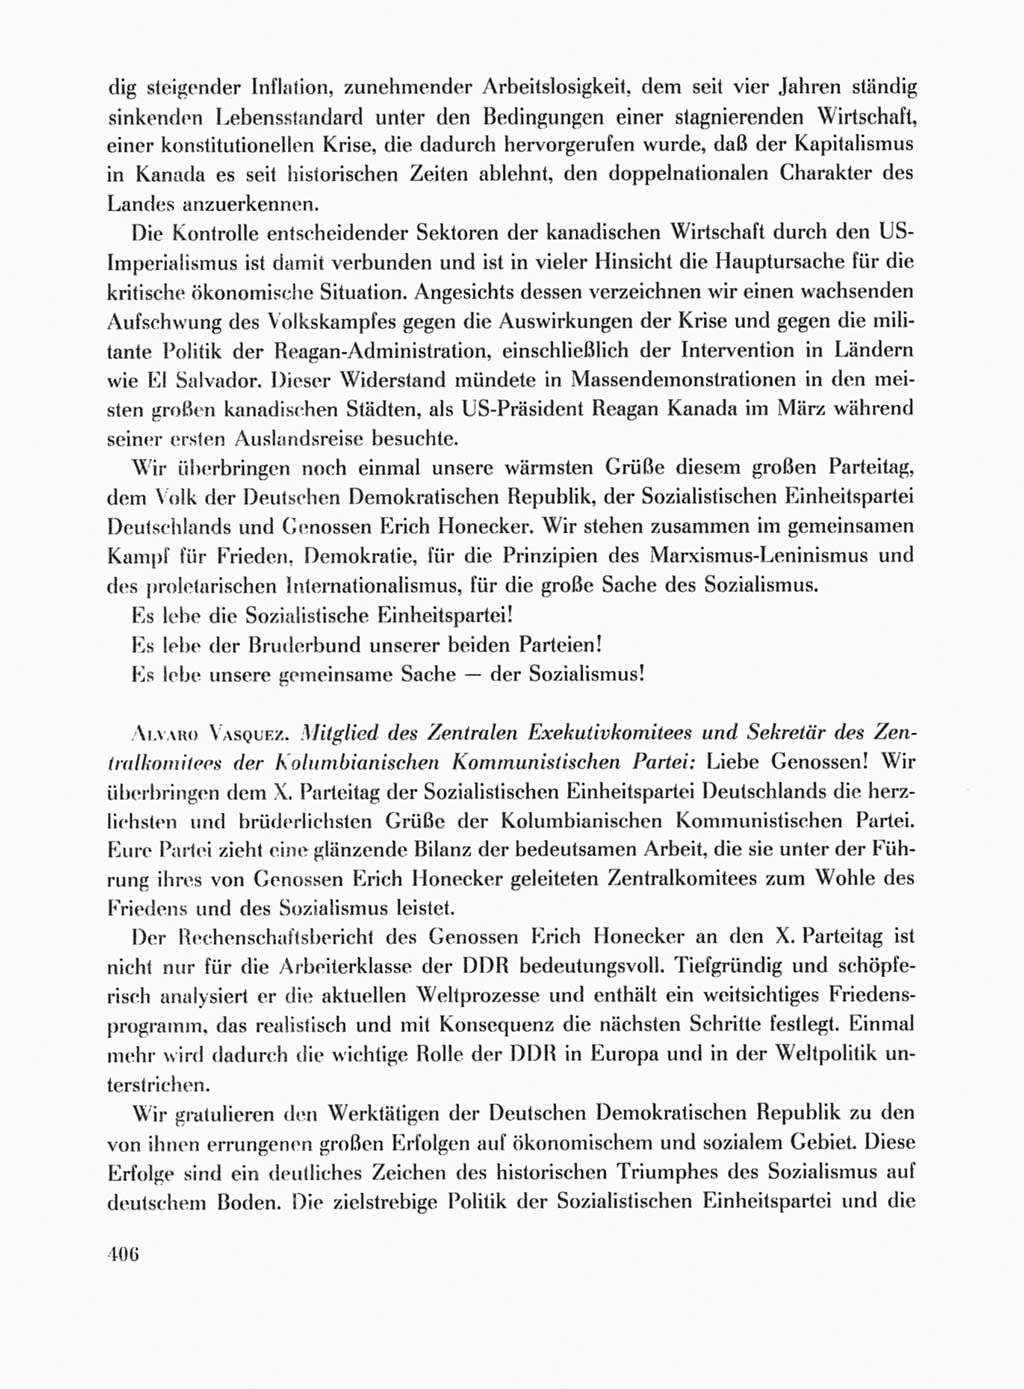 Protokoll der Verhandlungen des Ⅹ. Parteitages der Sozialistischen Einheitspartei Deutschlands (SED) [Deutsche Demokratische Republik (DDR)] 1981, Band 1, Seite 406 (Prot. Verh. Ⅹ. PT SED DDR 1981, Bd. 1, S. 406)